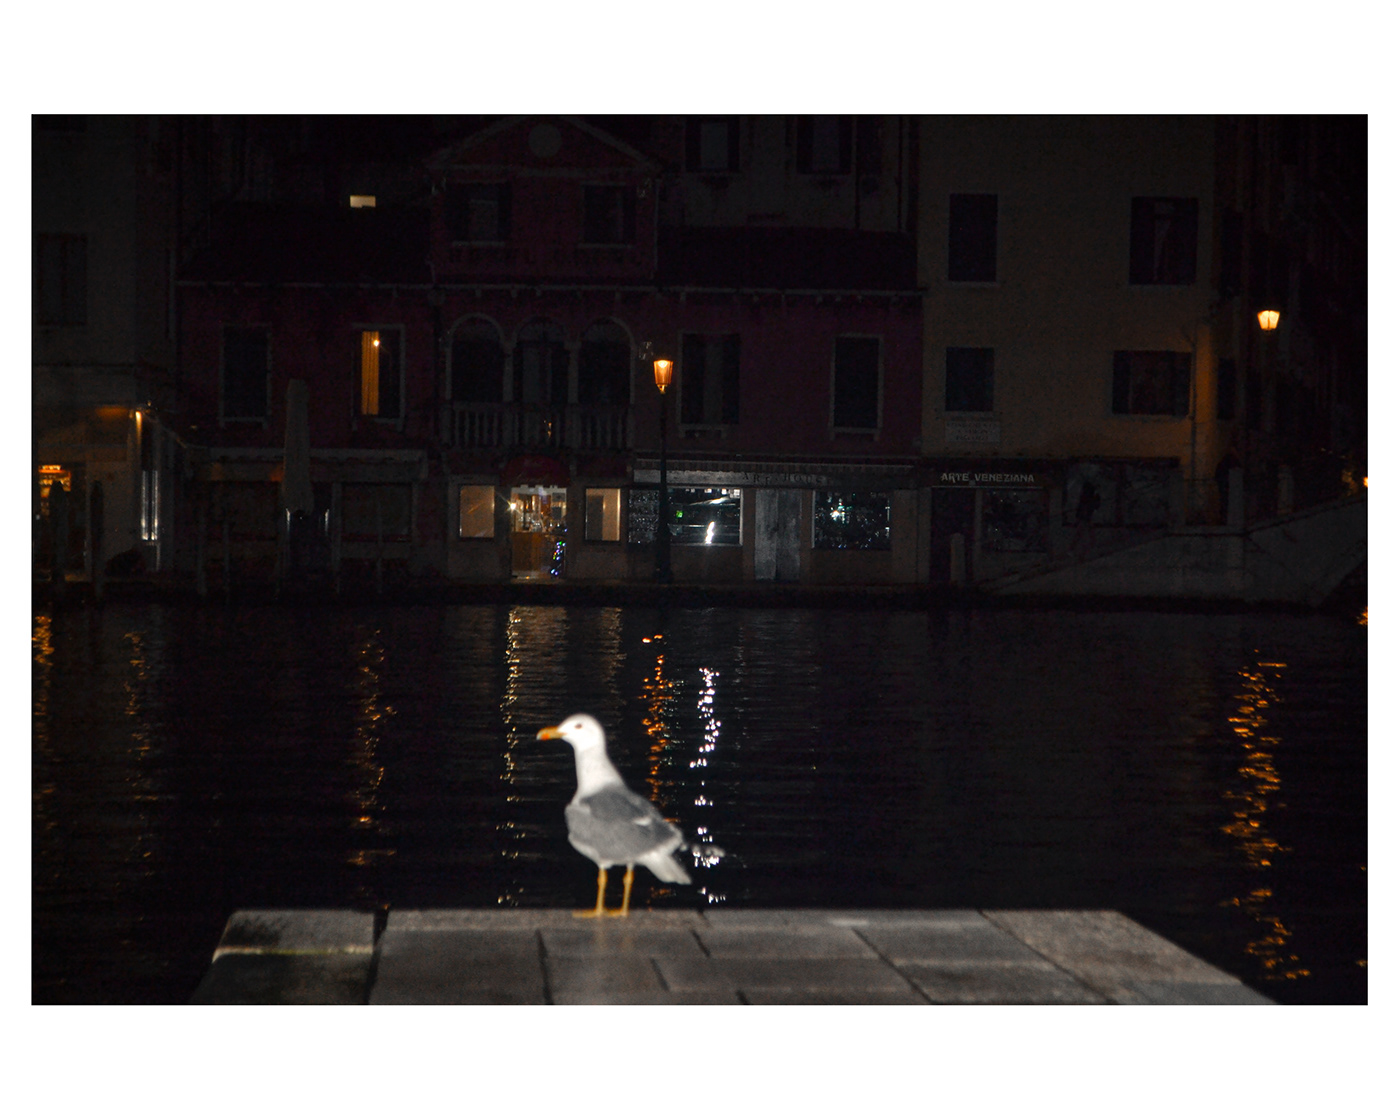 venezia Venice Italy Photography  city culture veneto